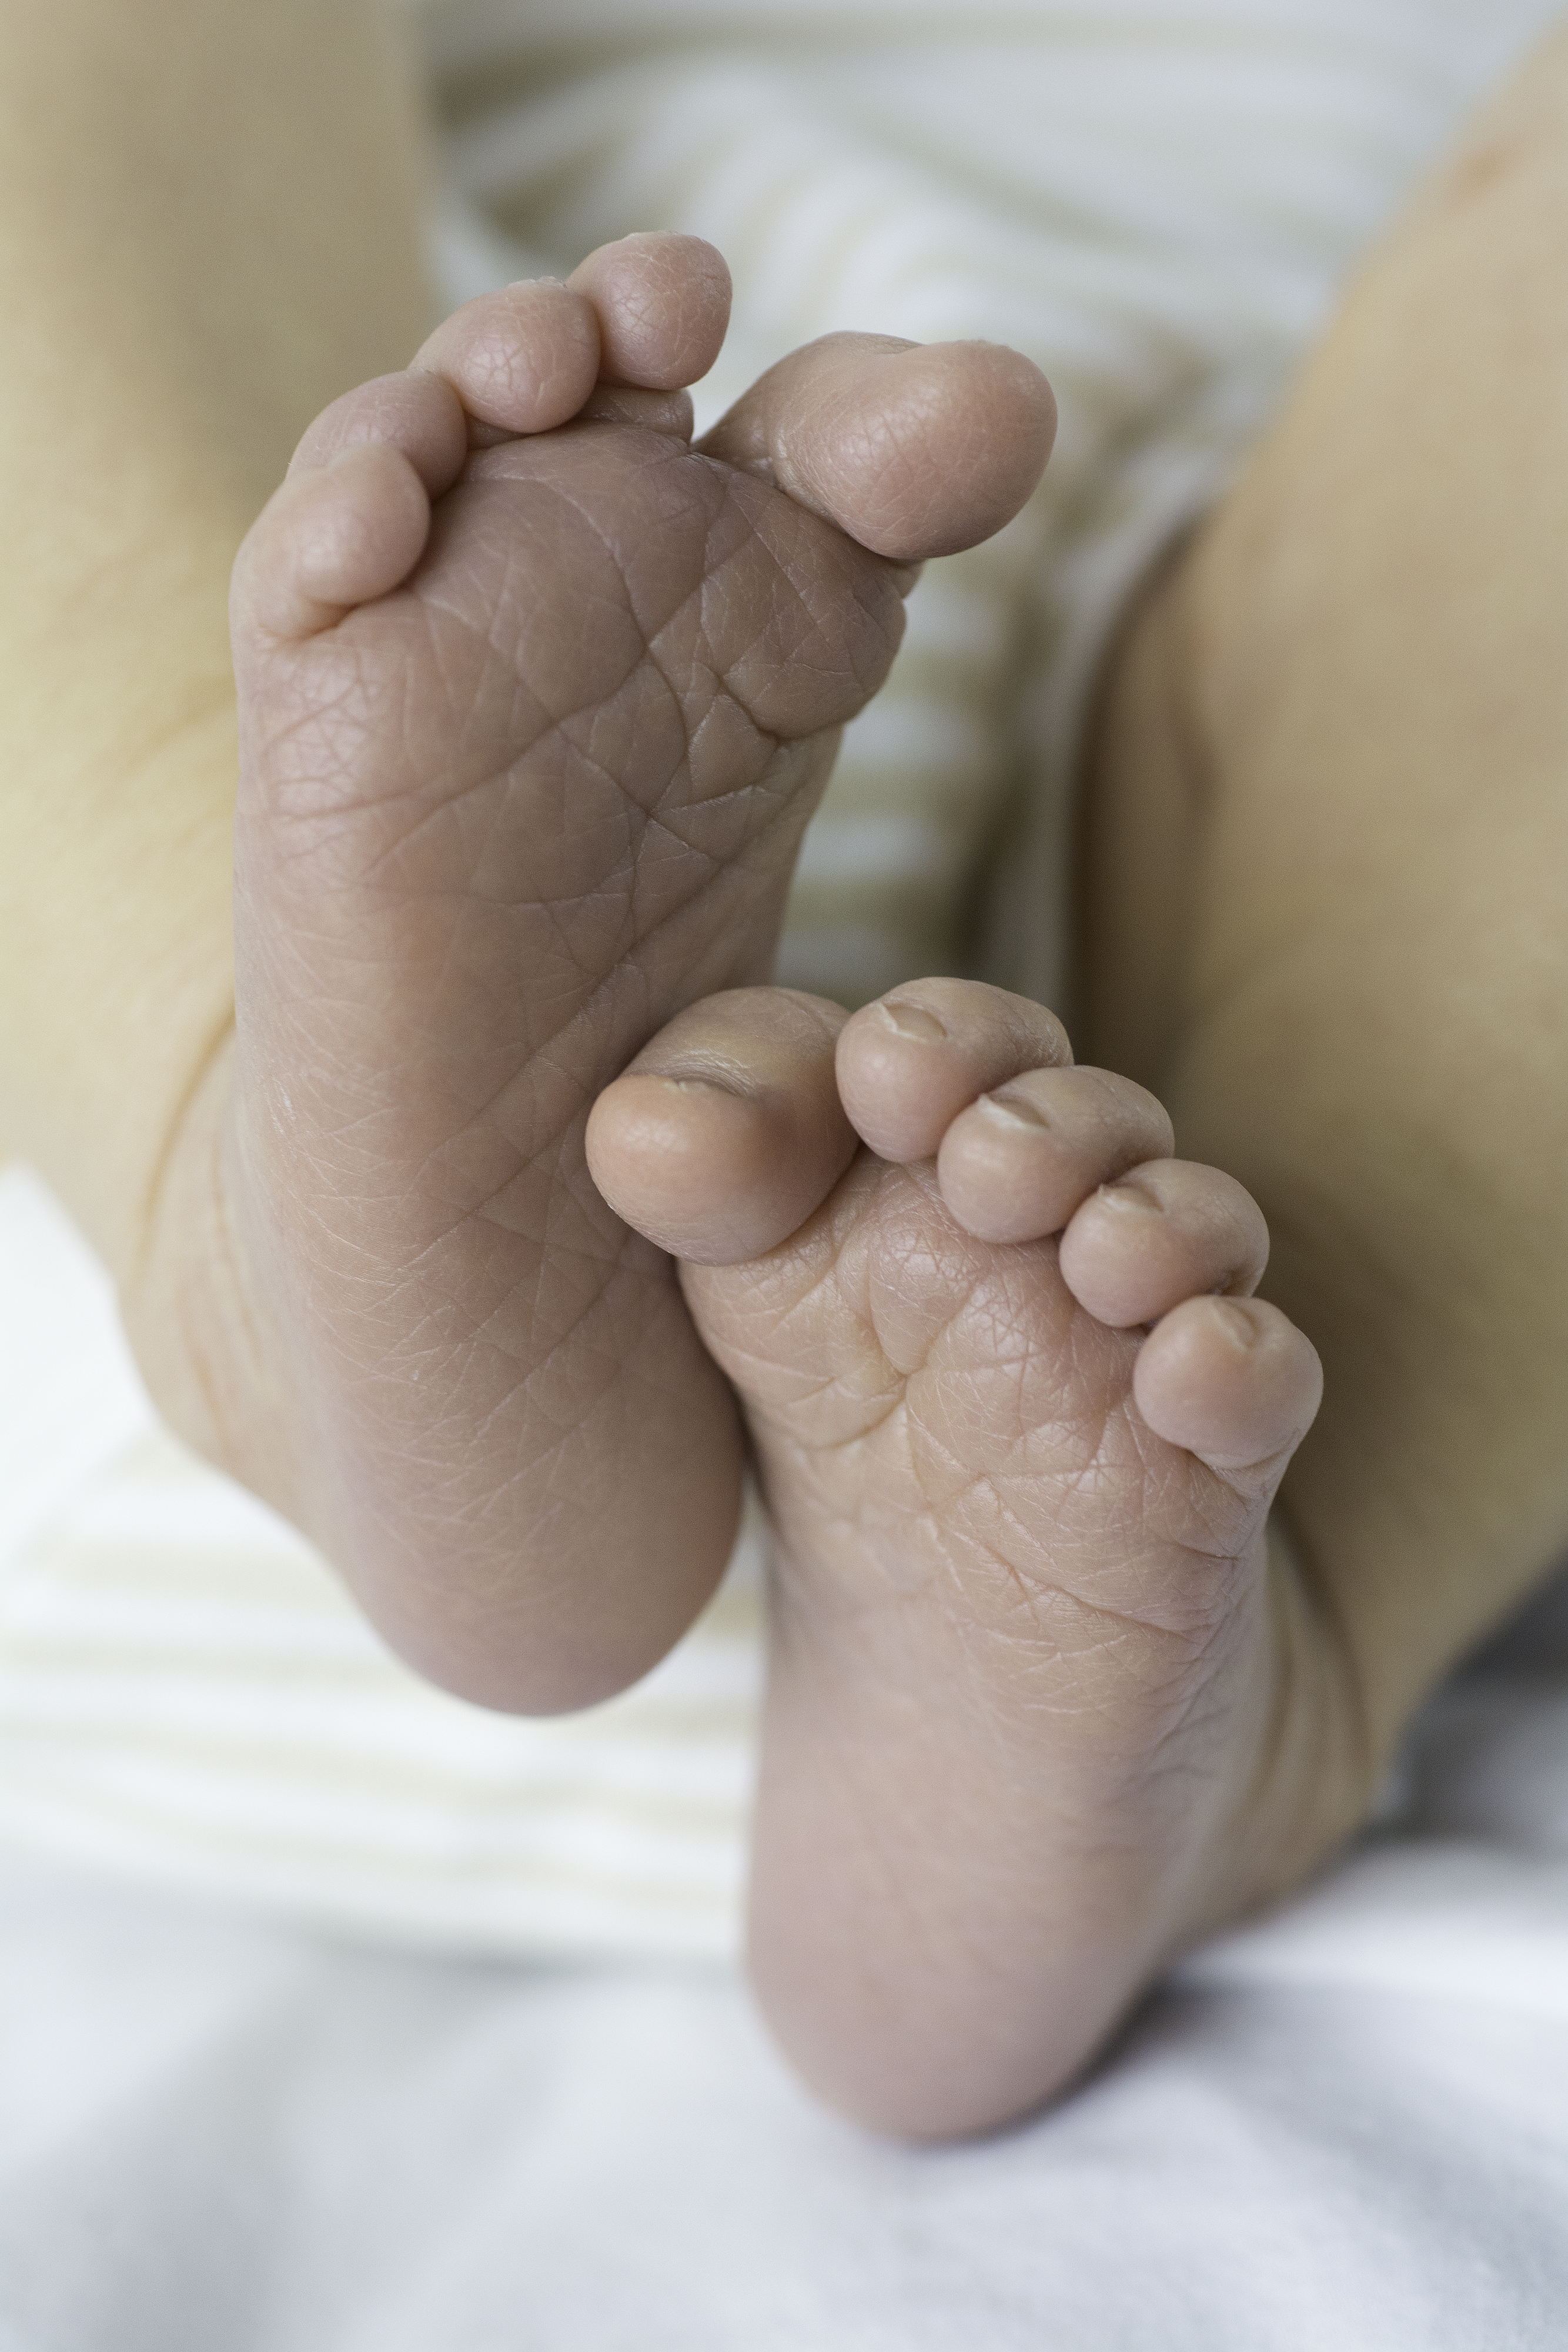 File:Newborn-Baby-Feet.jpg - Wikimedia Commons